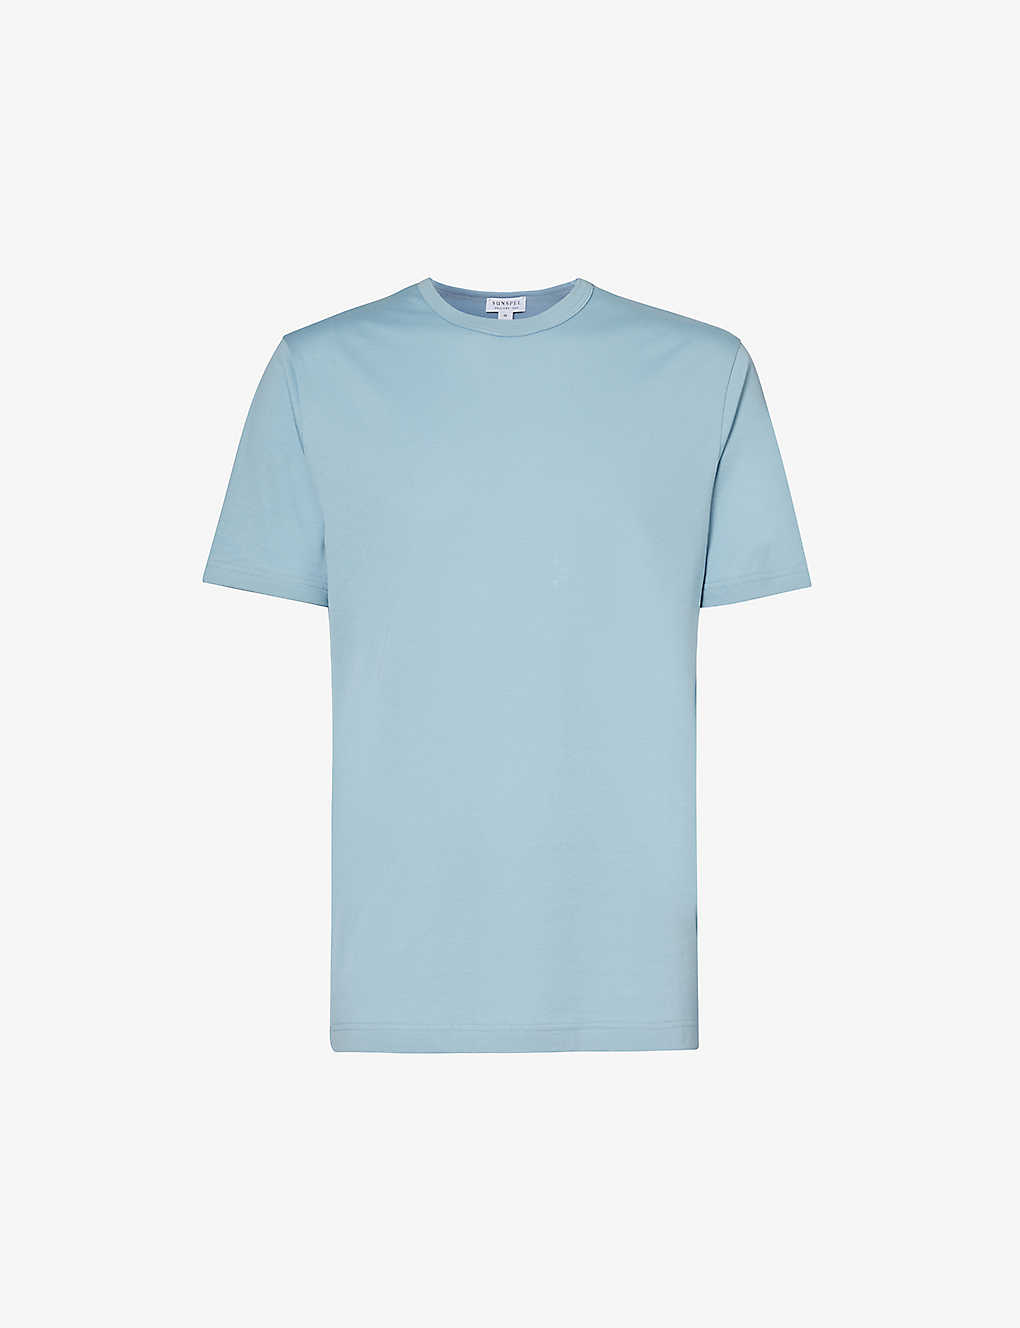 Sunspel Mens Sky Blue24 Short-sleeved Crewneck Cotton-jersey T-shirt